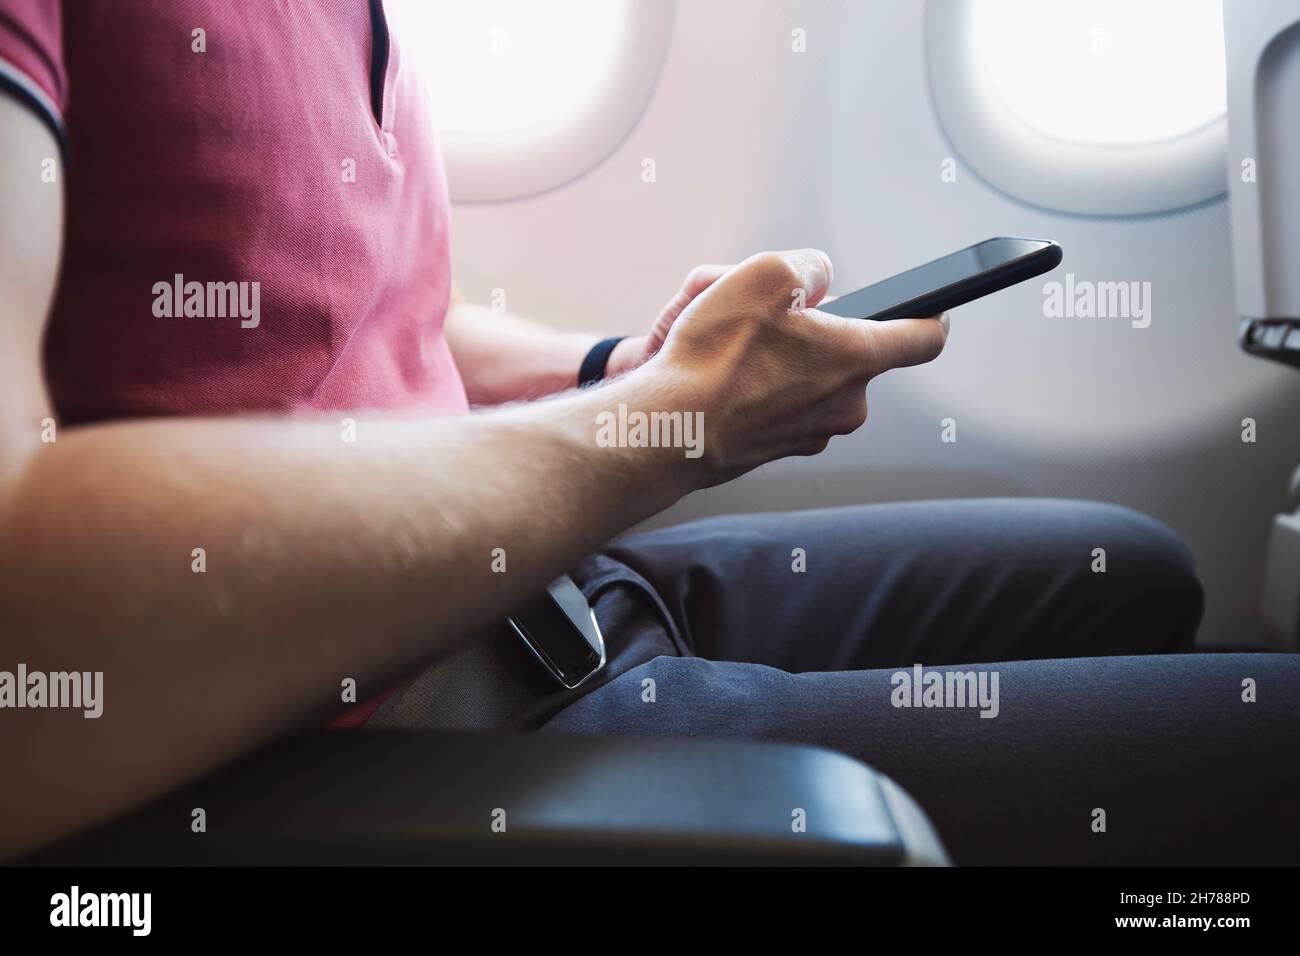 Mains tenant le smartphone dans l'avion.Passager utilisant une connexion Internet pendant le vol. Banque D'Images